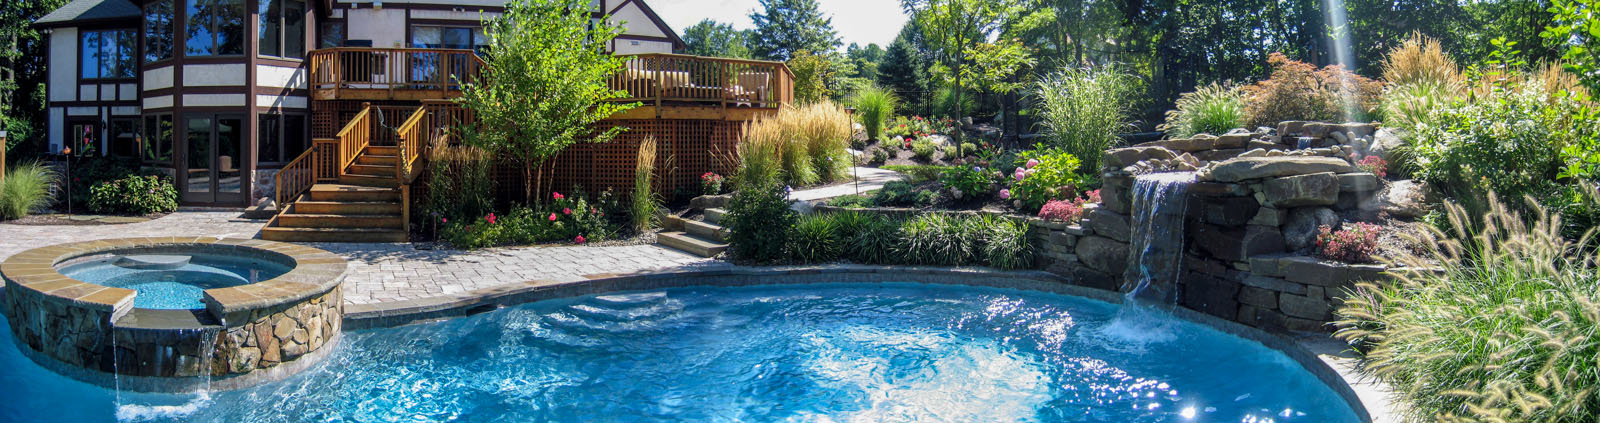 swimming pool with bluestone coping, spa, pool waterfall